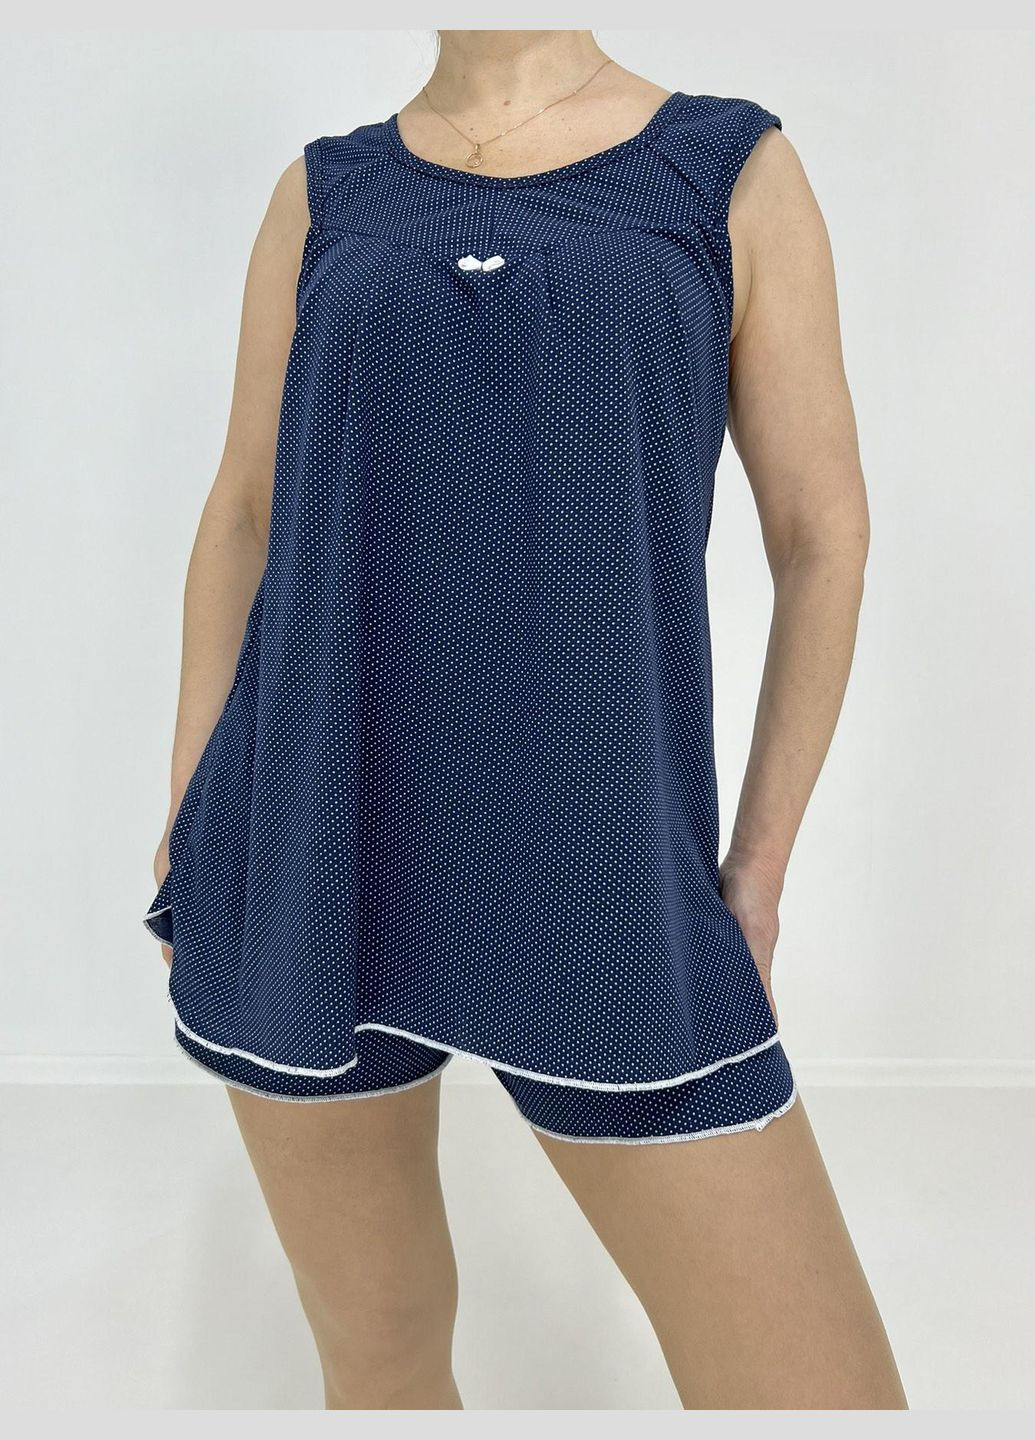 Темно-синяя всесезон комплект женский в мелкий горошек (майка + шорты) 58-60 синий 15348579-4 Triko